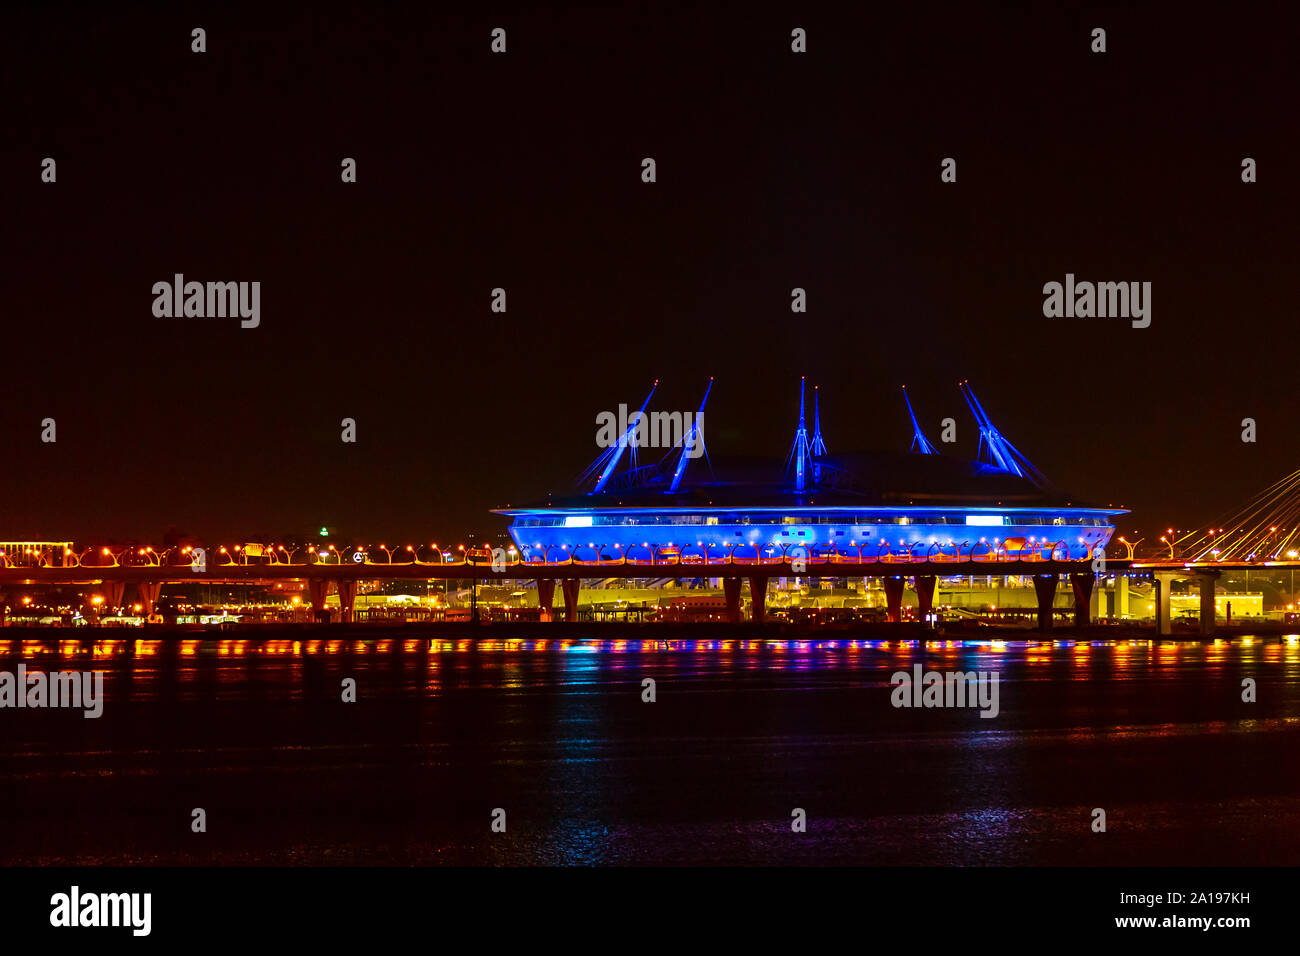 El estadio de fútbol, isla krestovsky, Gazprom arena, San Petersburgo, Rusia vista desde la plataforma de P&O, Arcadia de 2019 crucero del Báltico. Foto de stock